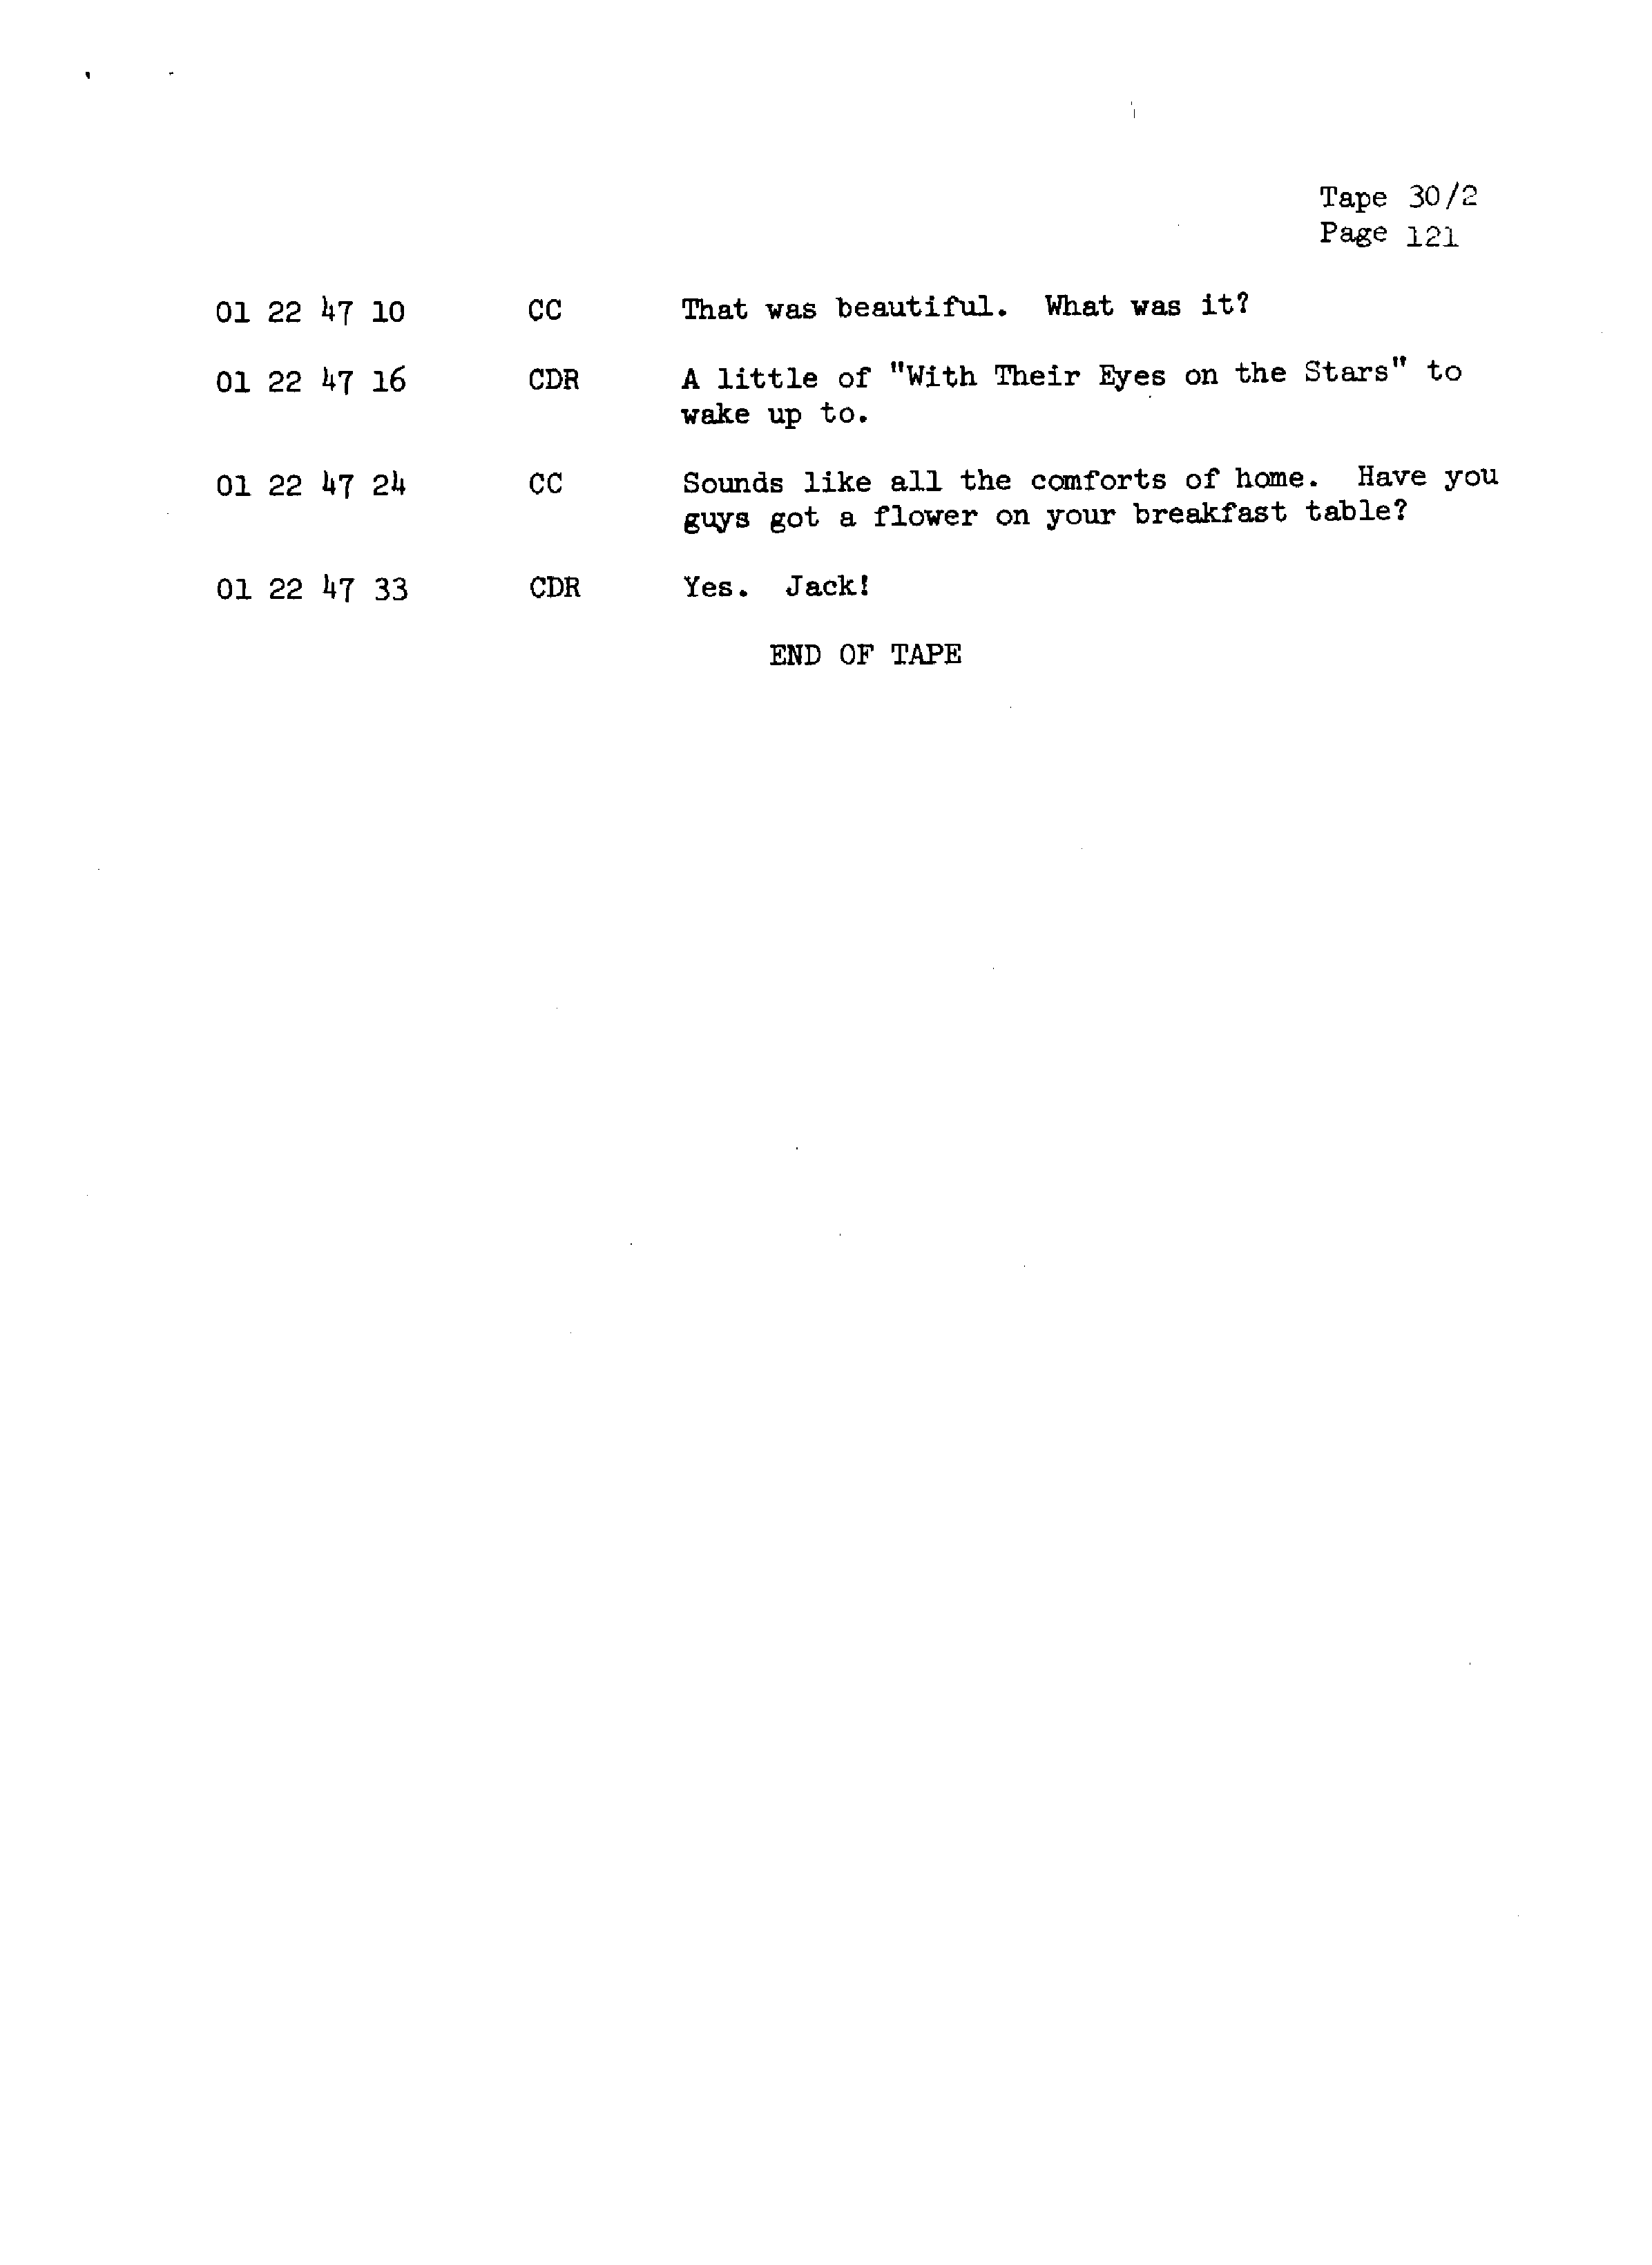 Page 128 of Apollo 13’s original transcript